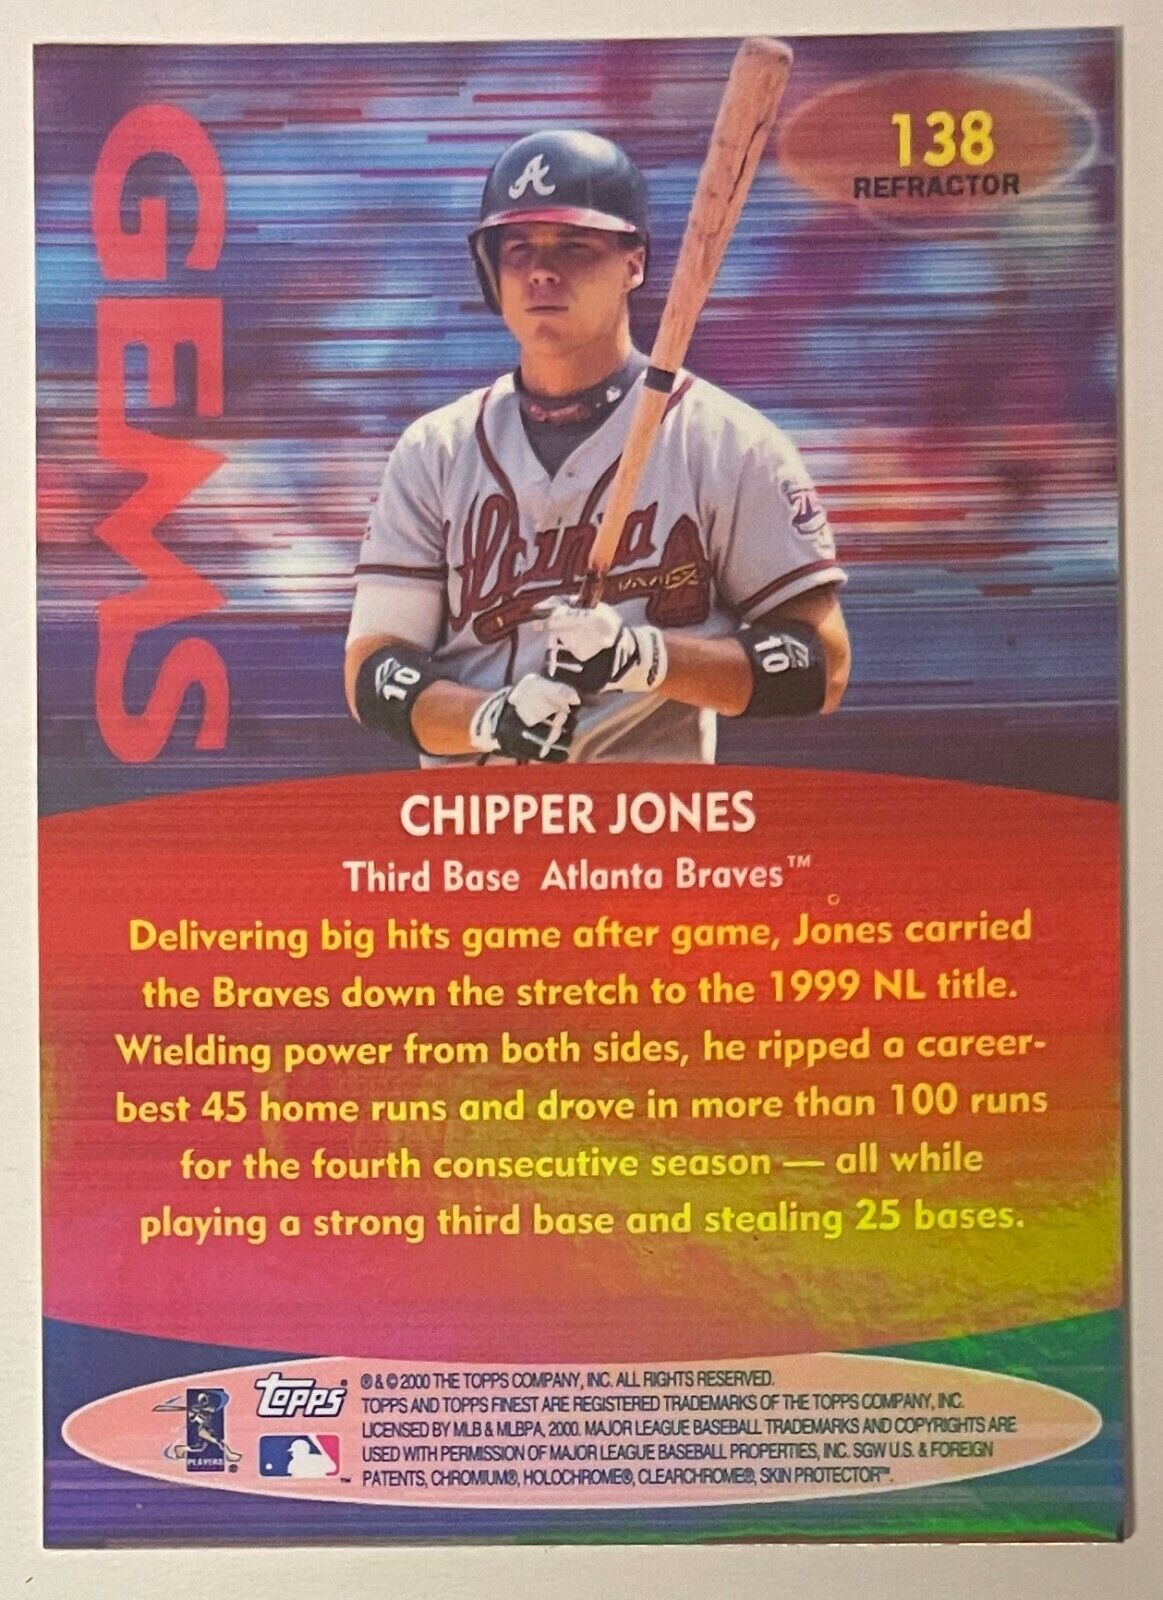 2000 Topps Chrome All-Star Rookie Team Refractor rt3 Chipper Jones